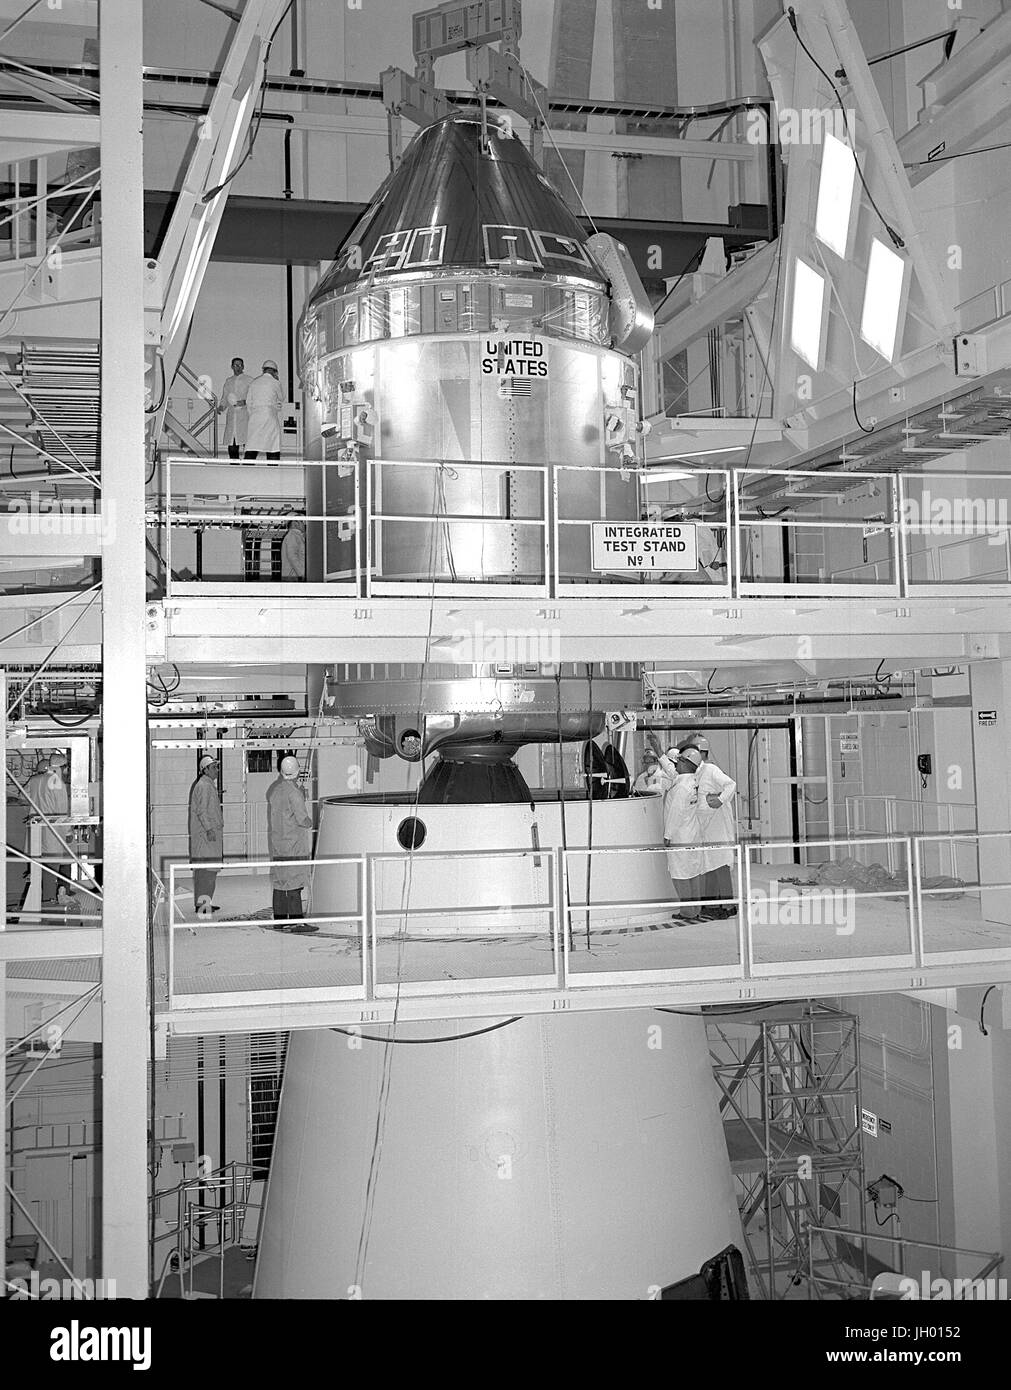 L'Apollo 11 Comando/Service Module (CSM) vengono accoppiati per il Saturn V Modulo Lunare Adapter.Command modulo Modulo Servizio CSM Apollo 11 Modulo Lunare Adapter Foto Stock